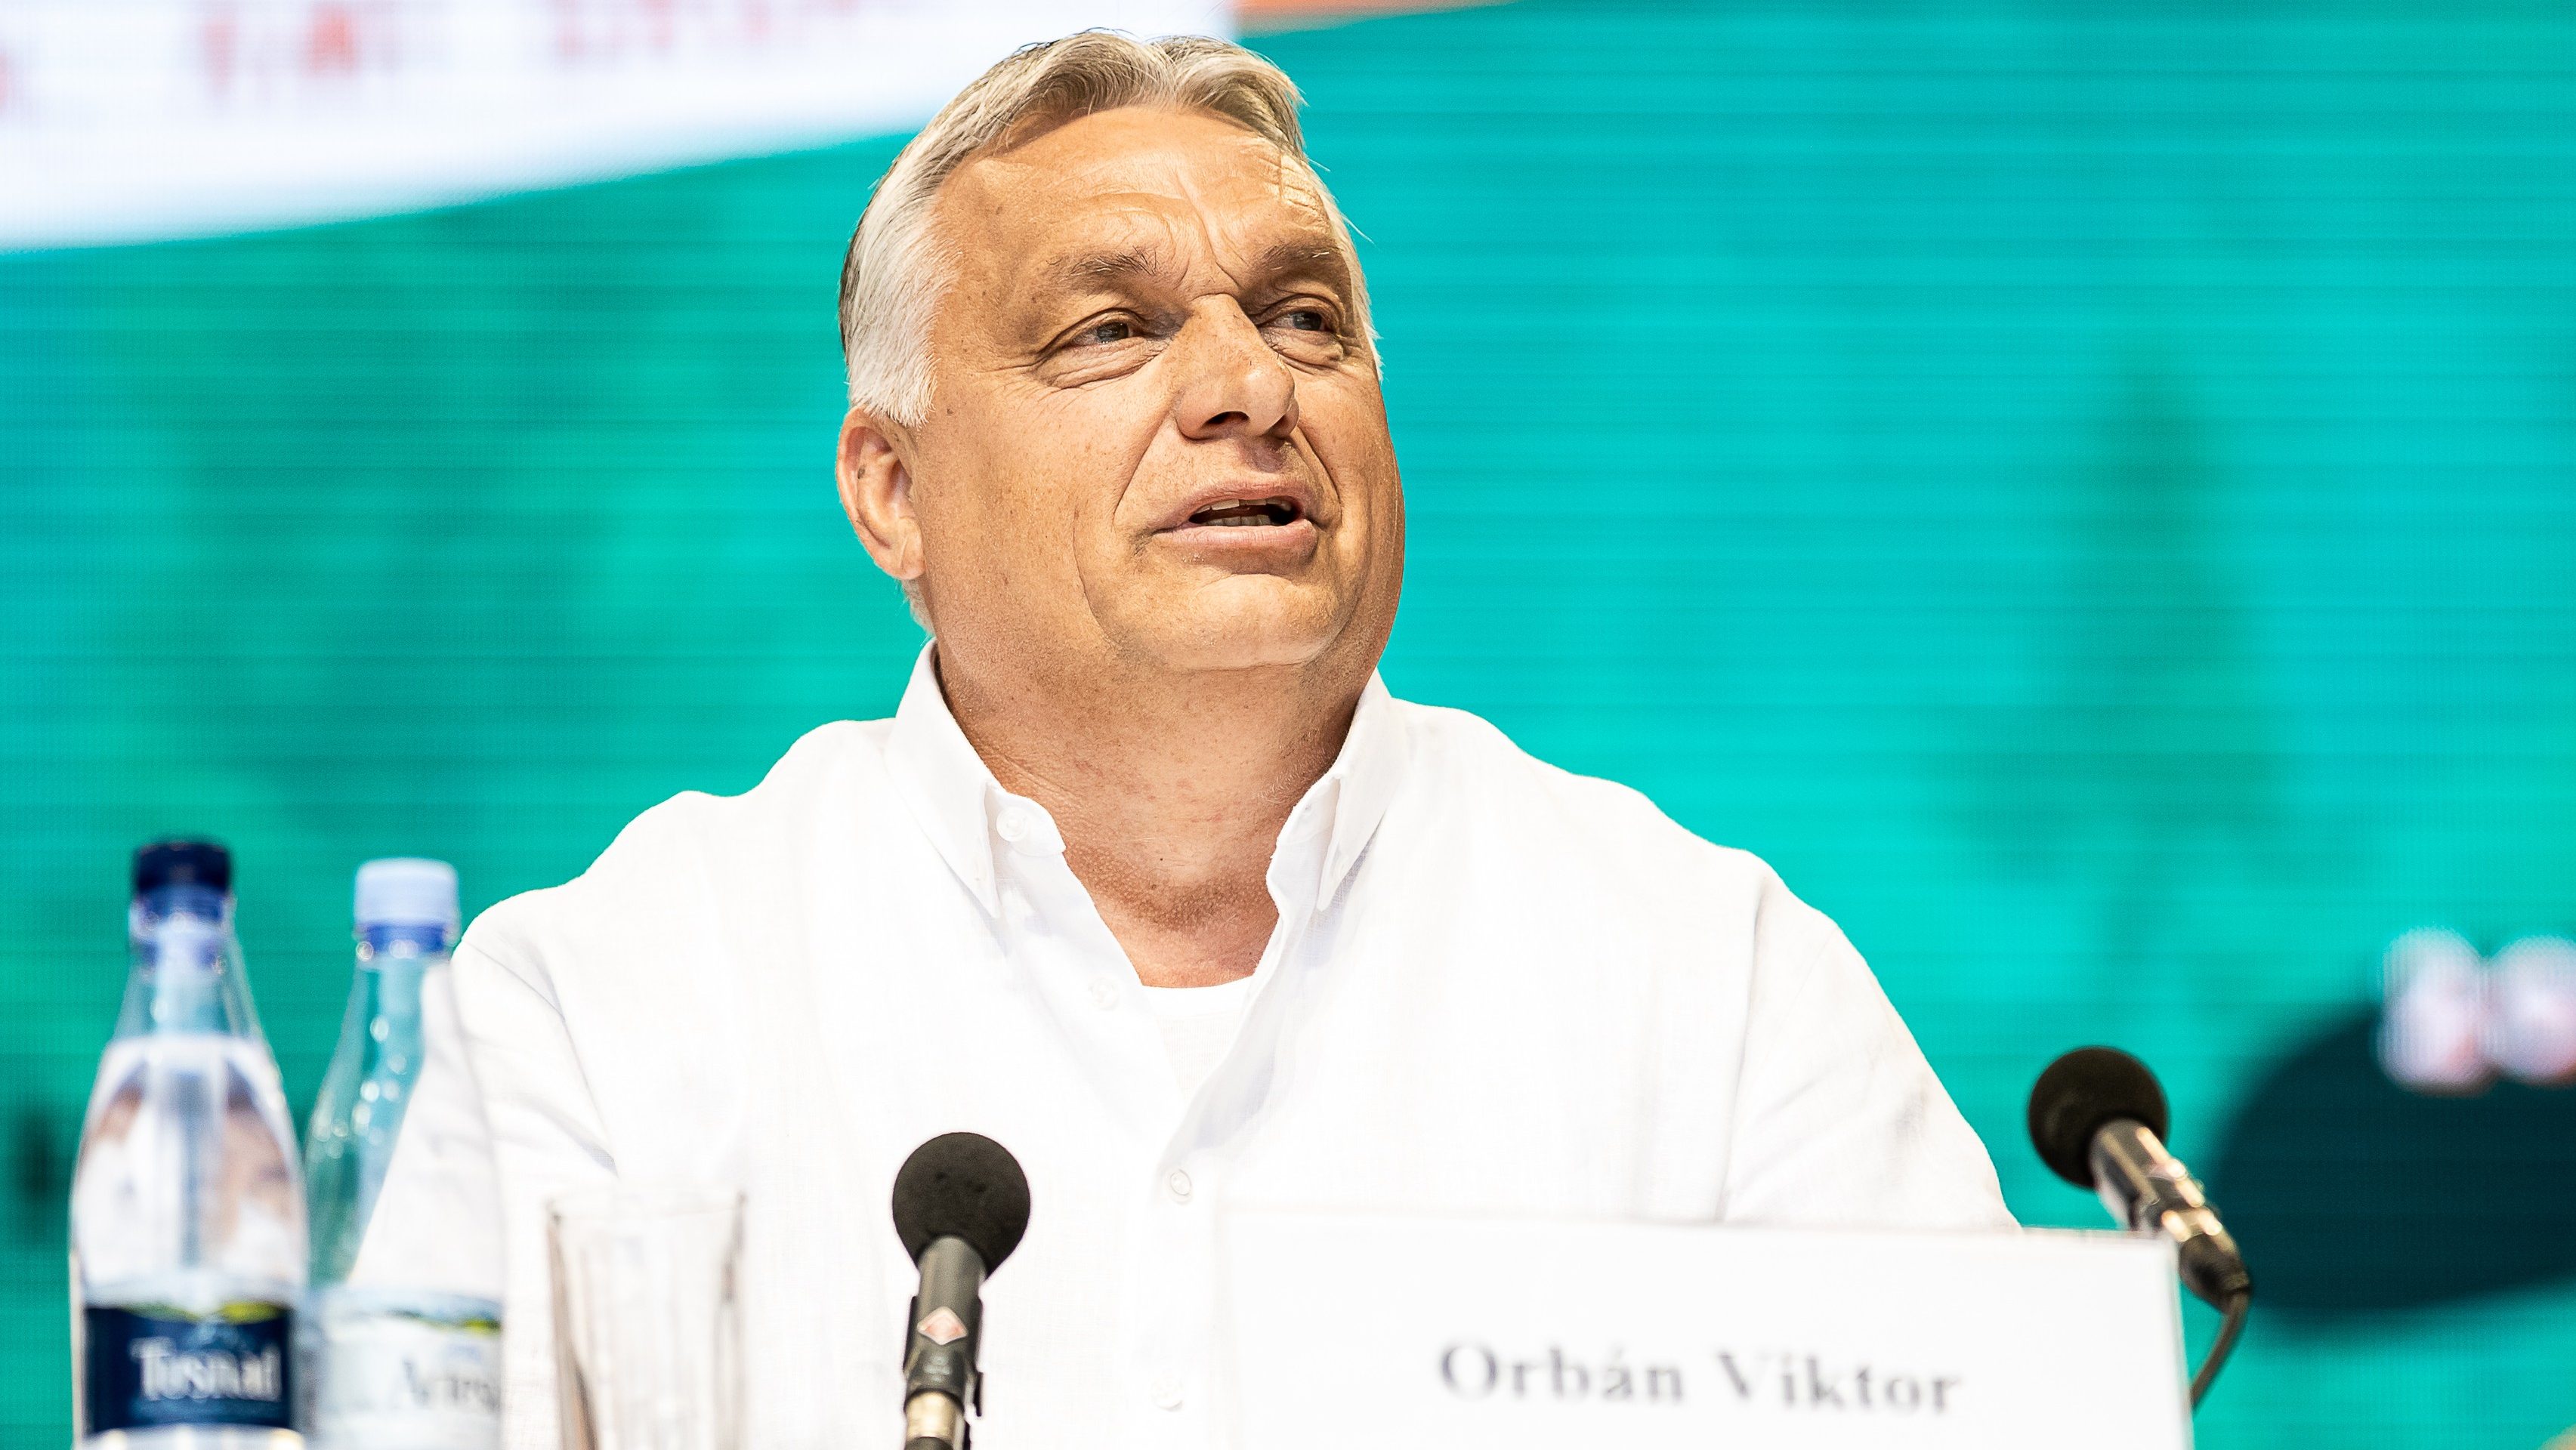 Kertész János akadémikus: Orbán Viktor vonja vissza a szavait és kérjen elnézést a magyar néptől